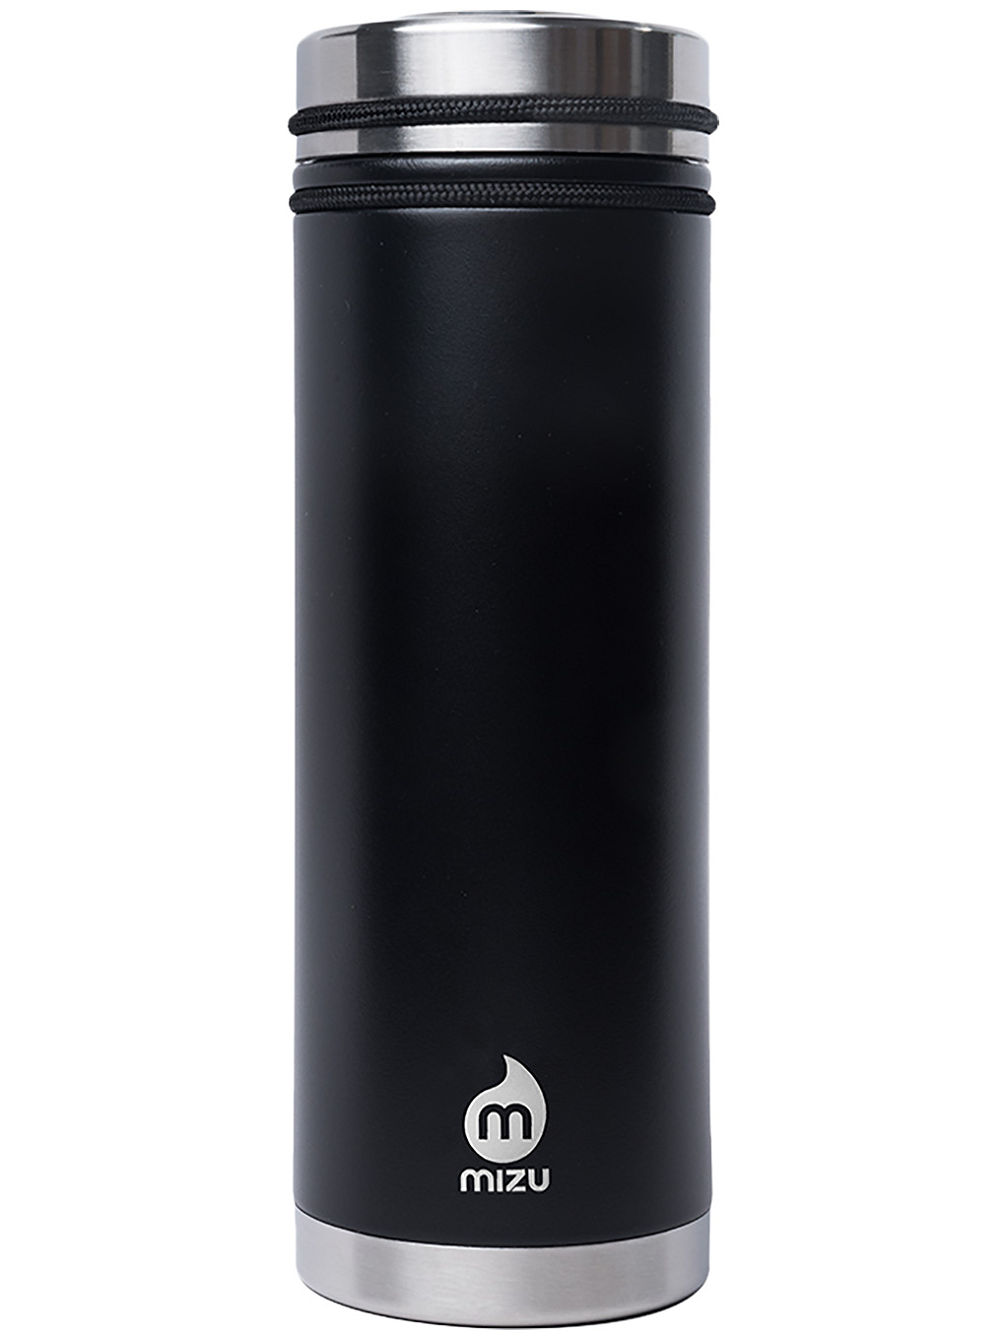 360 V7 Enduro Black Le W V-Lid Bottle